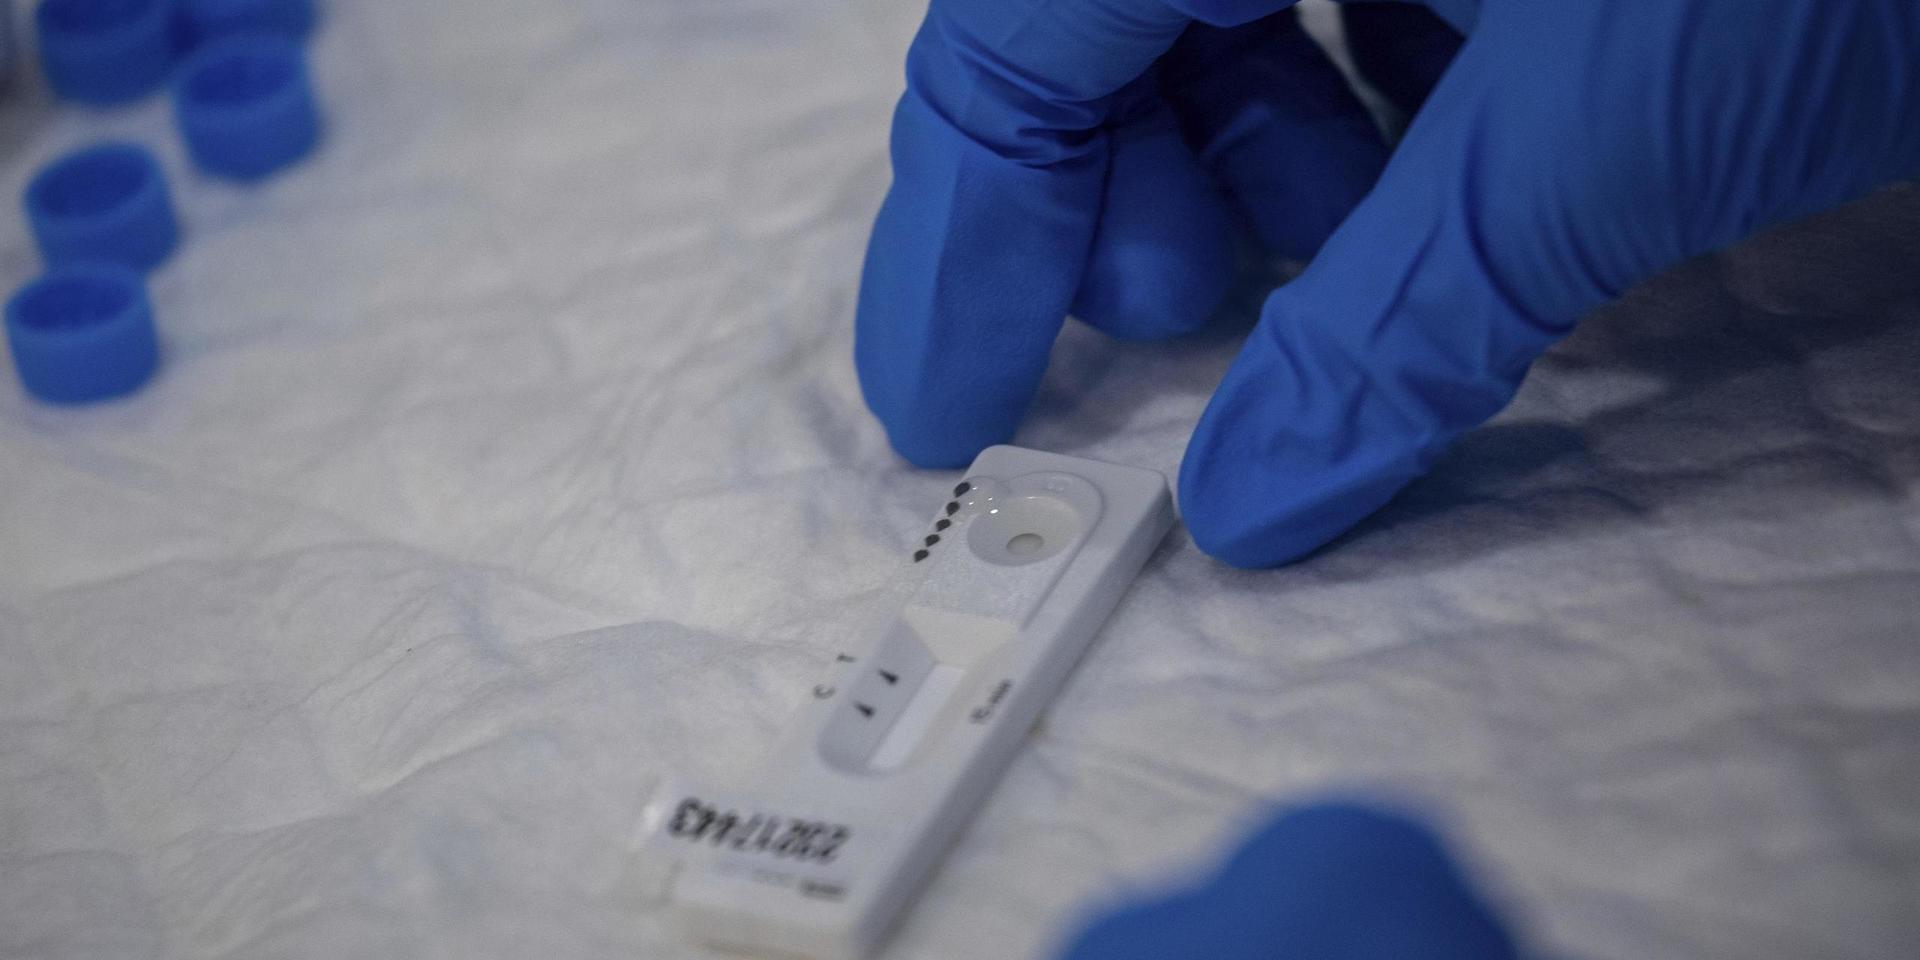 De nya snabbtesterna har liknats vid graviditetstest och anses kunna fylla en funktion genom att snabbt fånga upp smittade.